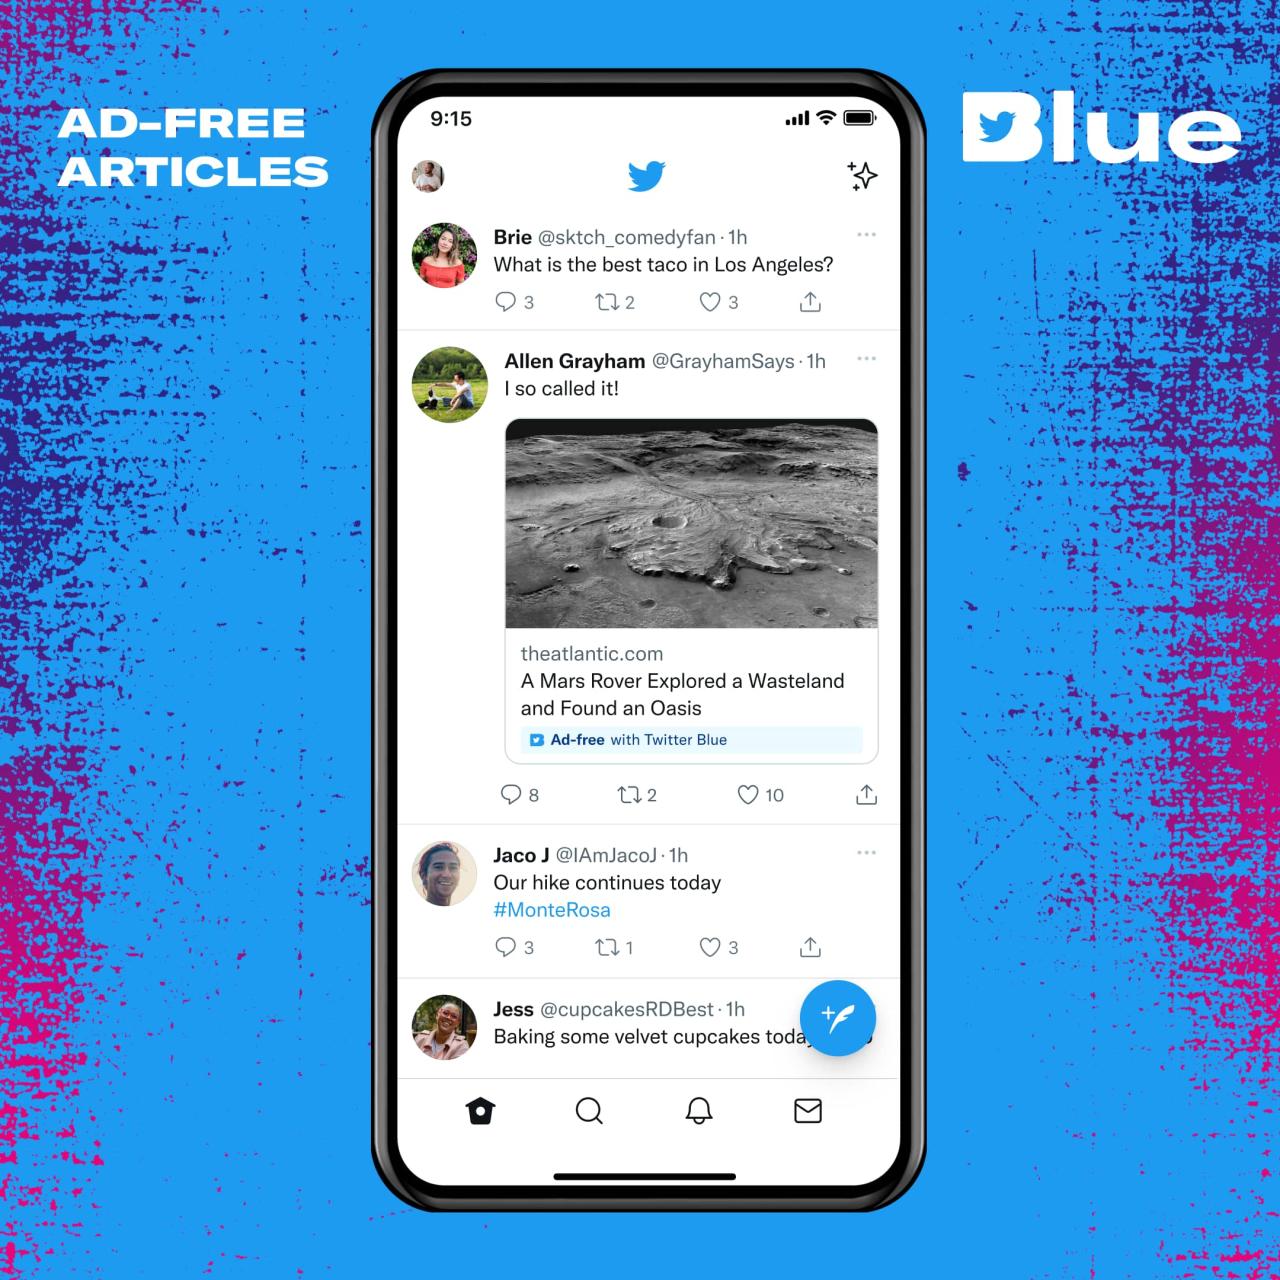 Gráfico promocional para la lectura sin publicidad de artículos en sitios web participantes disponibles con la suscripción a Twitter Blue en iPhone